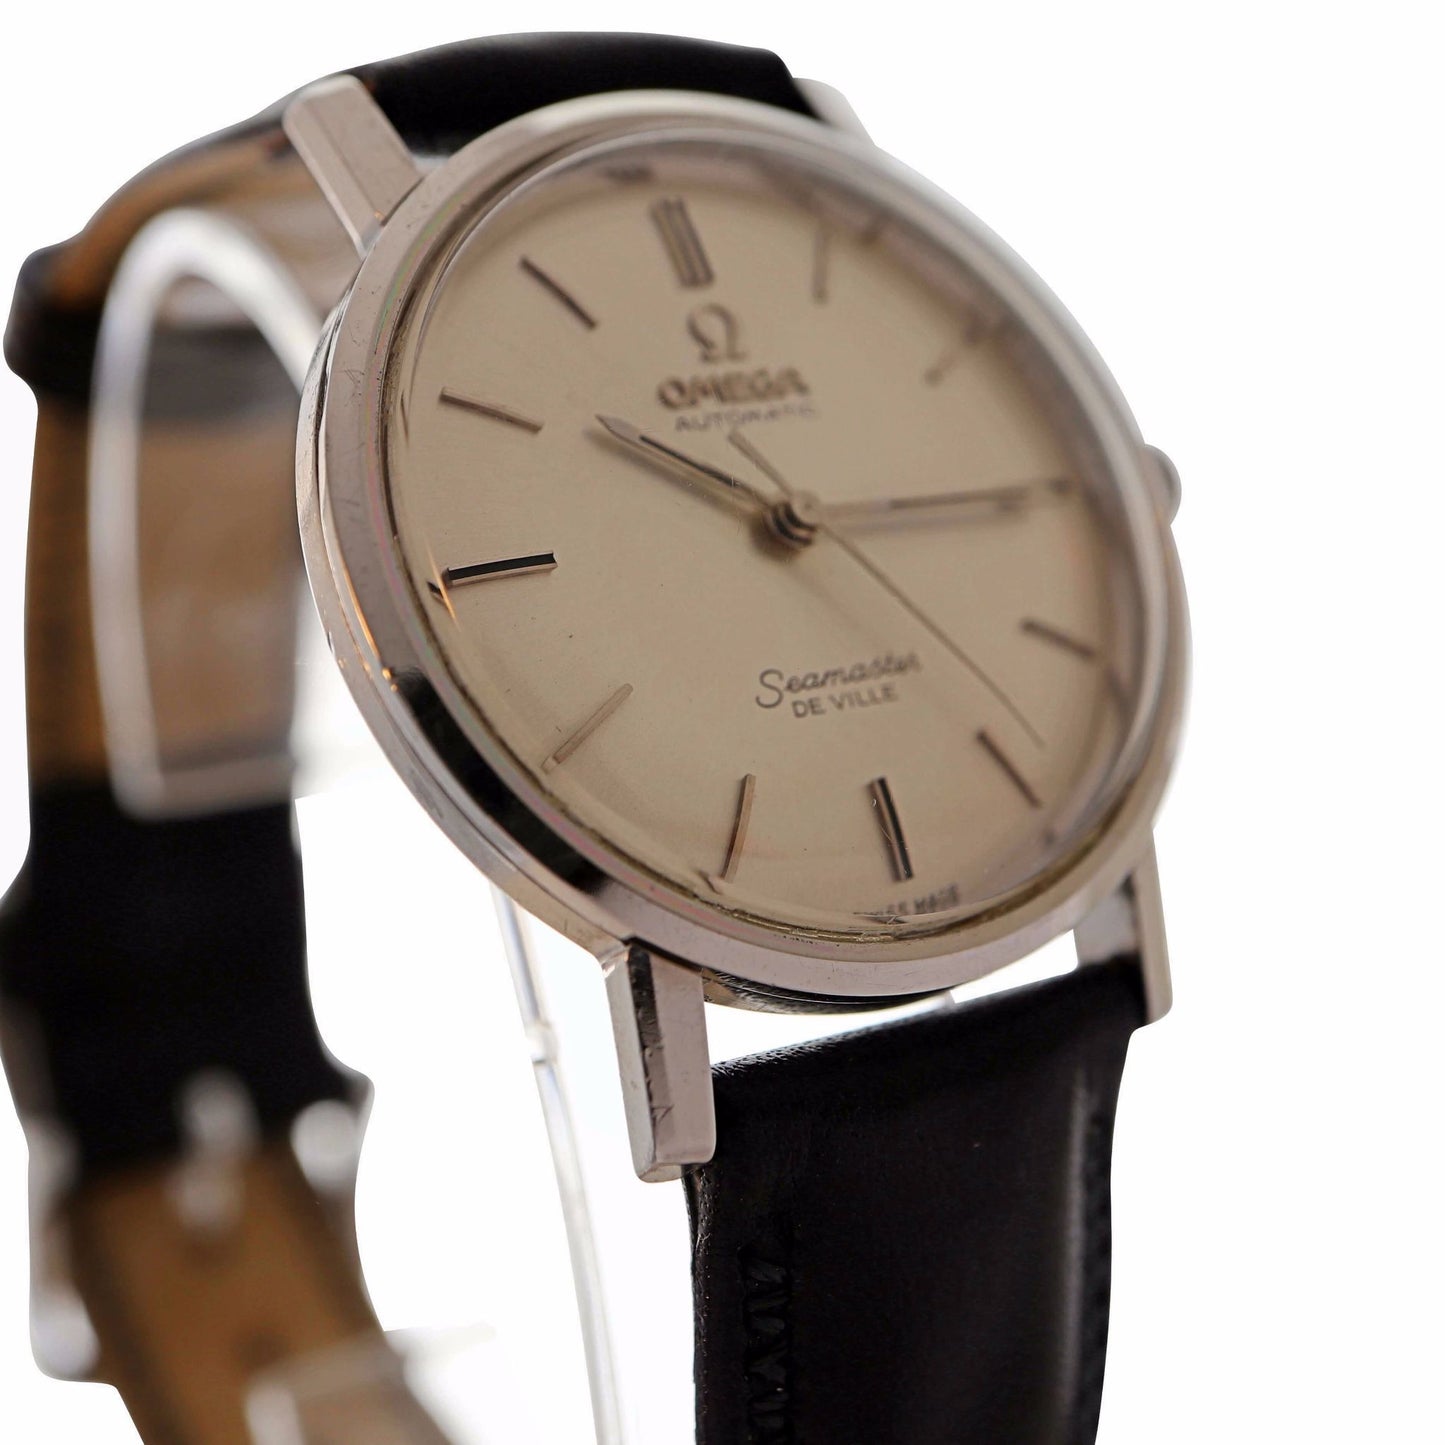 Omega Seamaster De Ville Ref. 165.004, 1964 Men's Vintage Watch